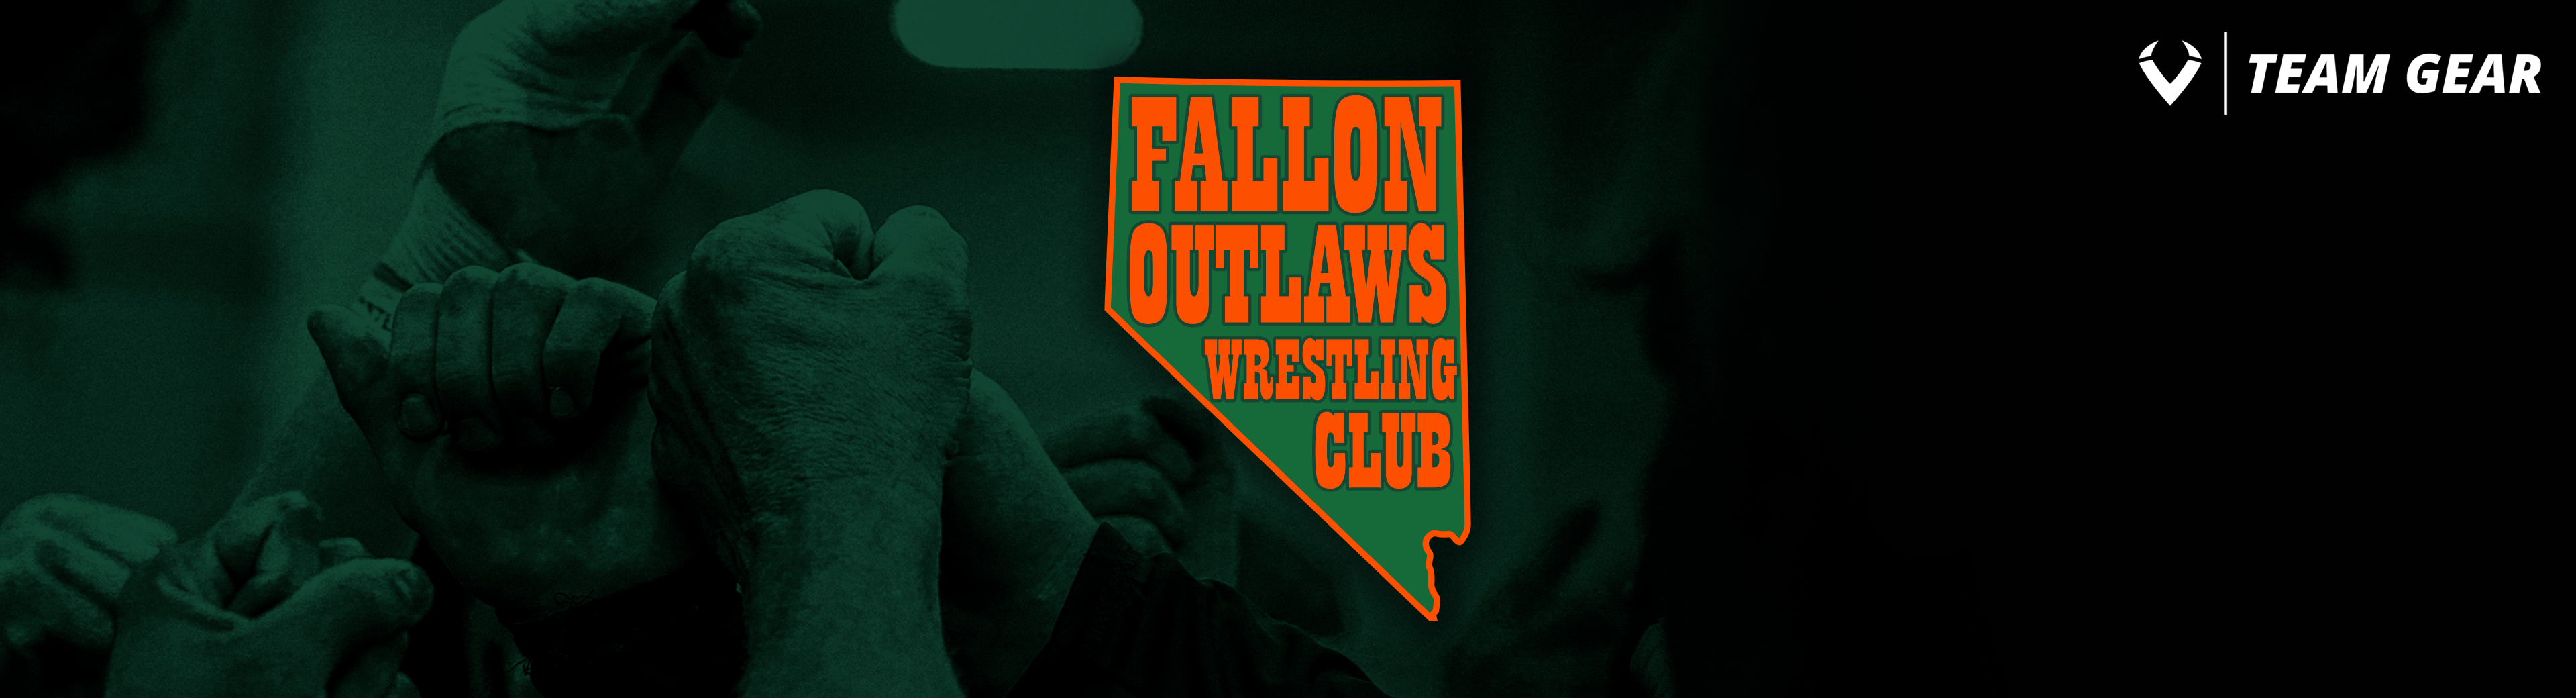 Fallon Outlaws